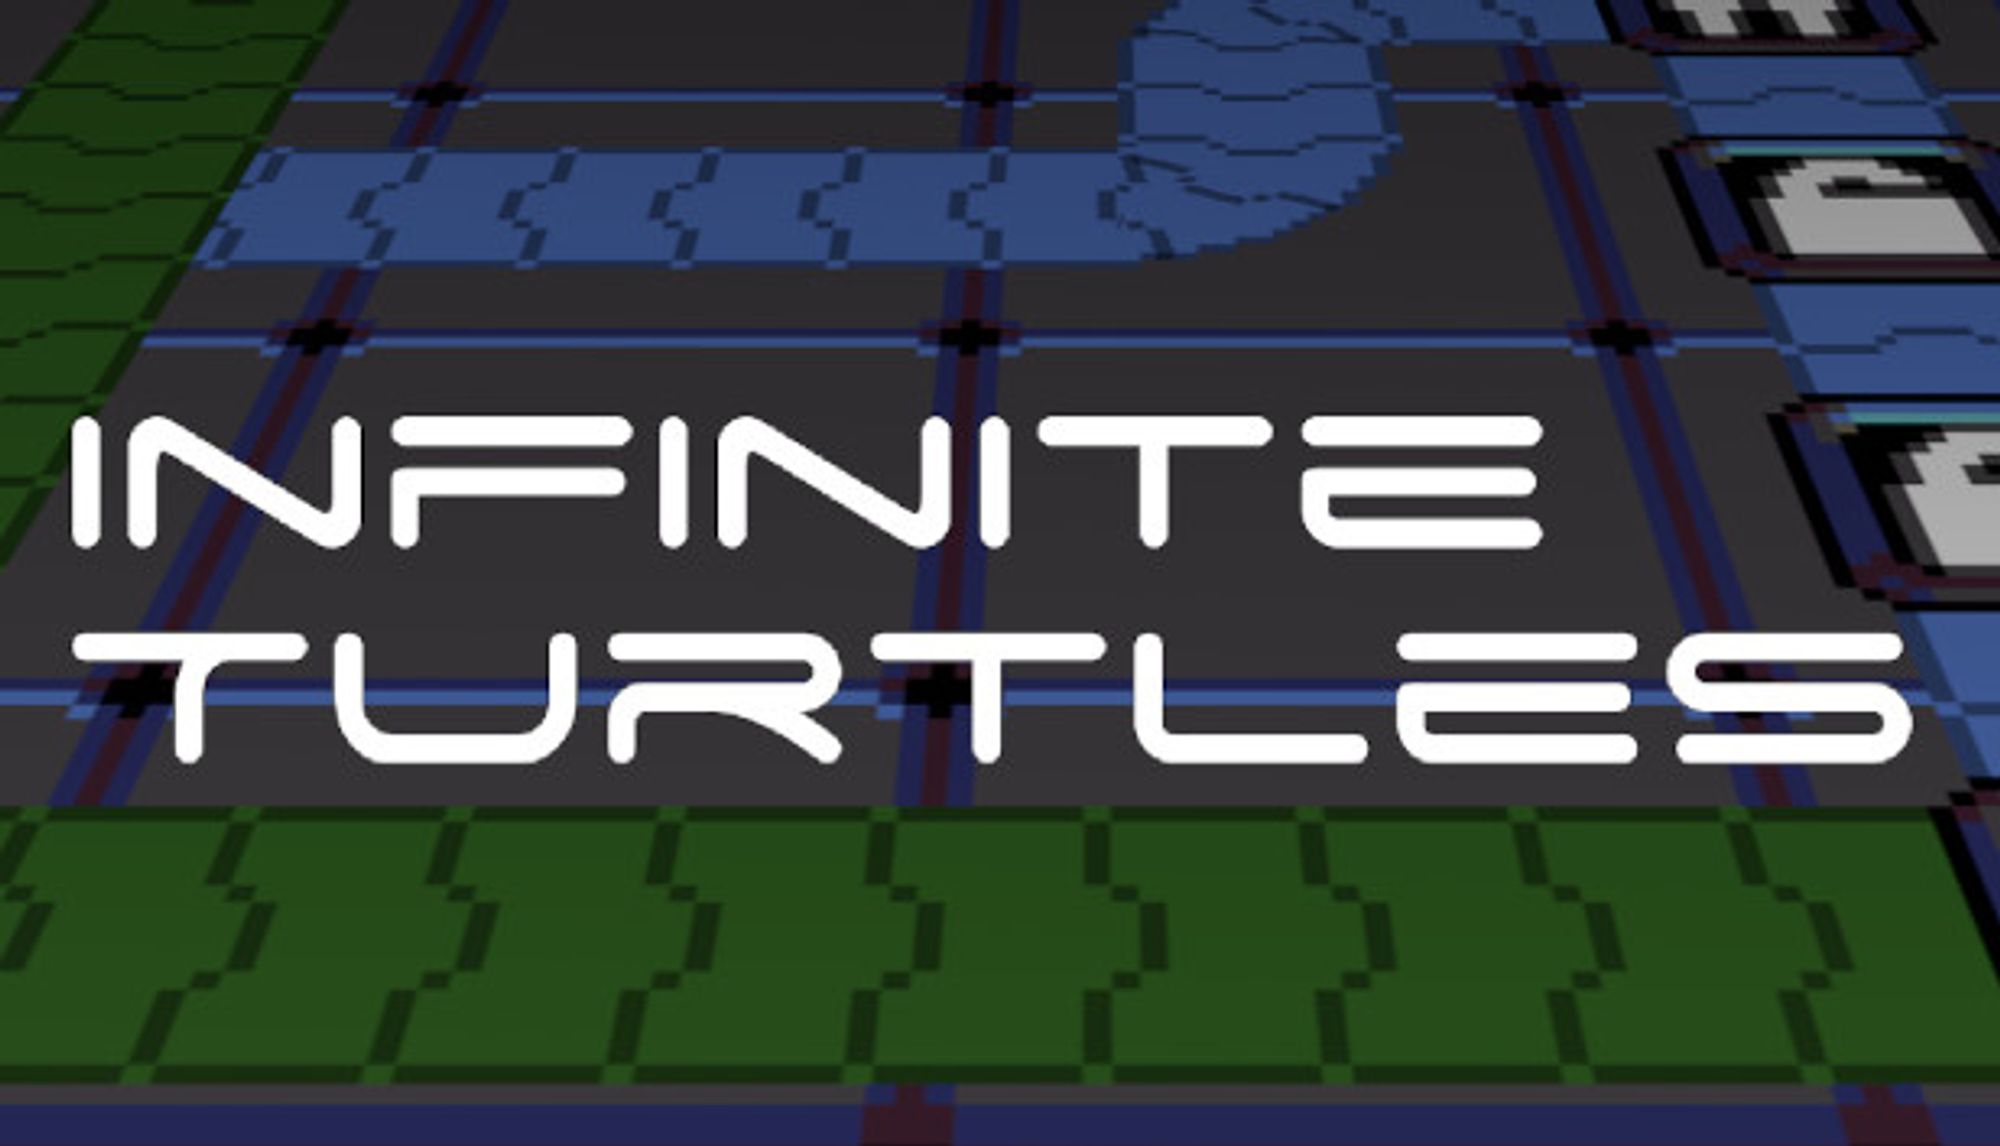 Save 50% on Infinite Turtles on Steam